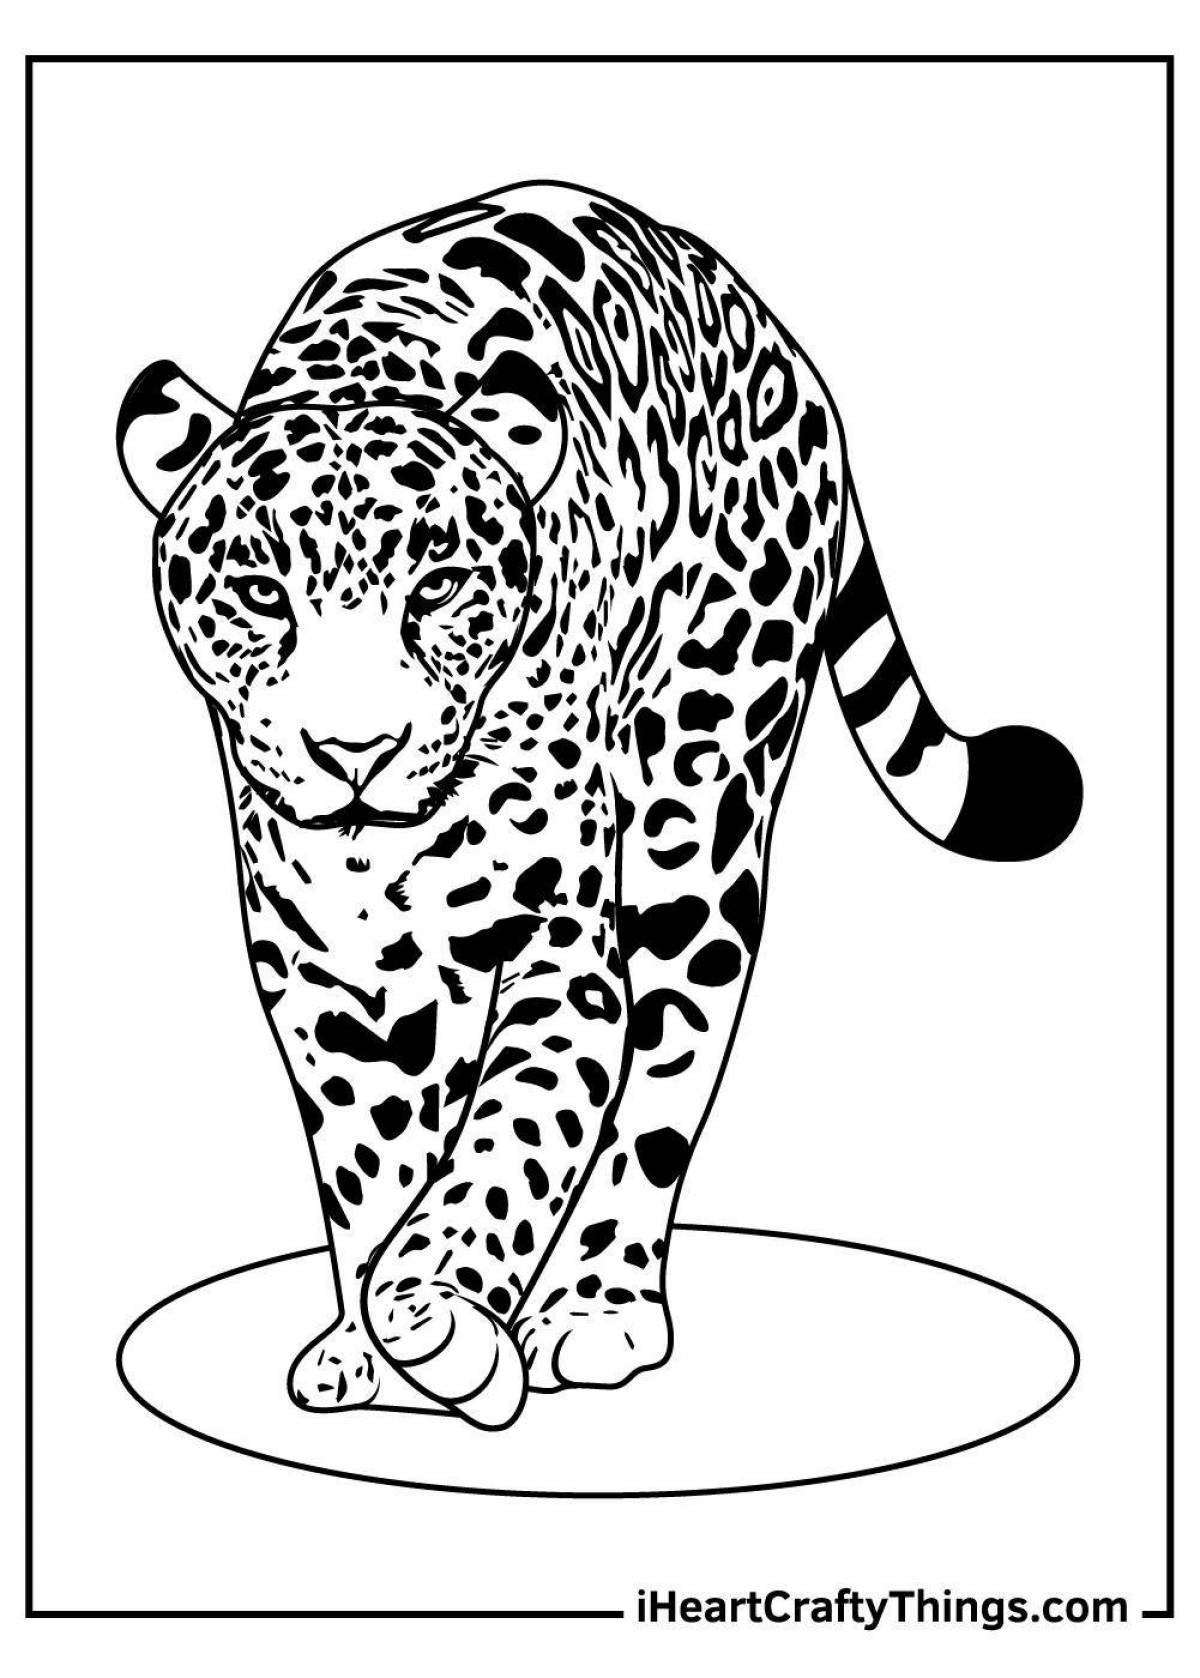 Художественный леопард раскраски для детей 5-6 лет